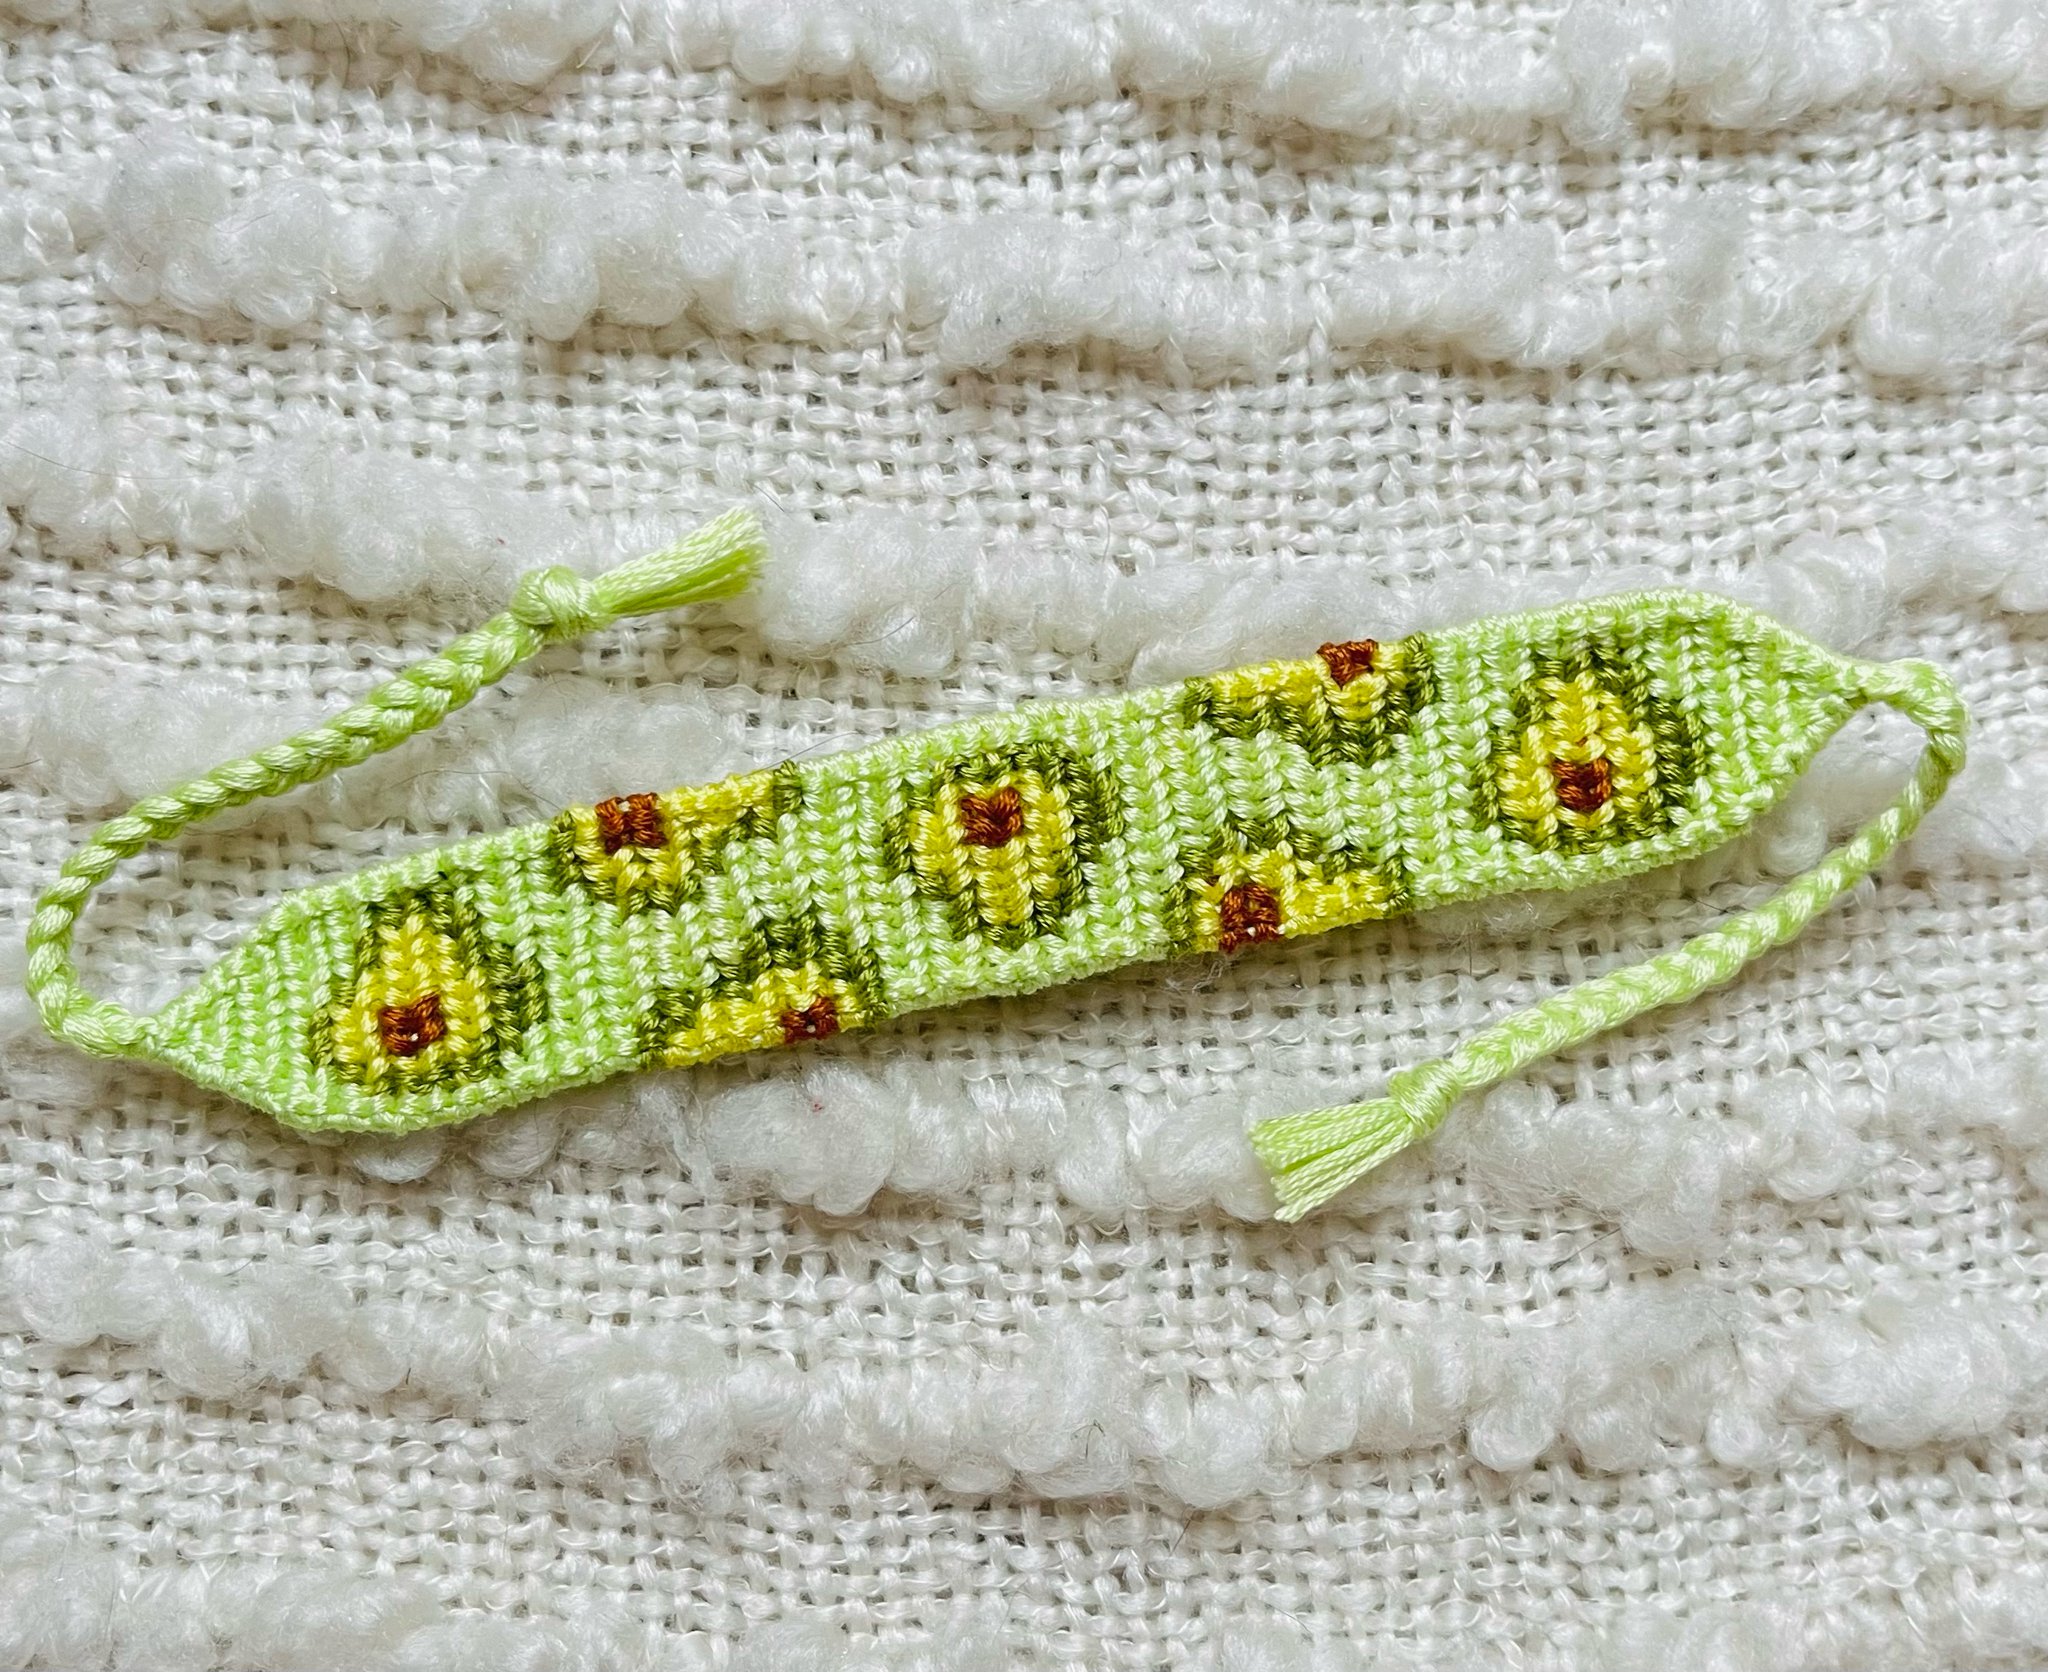 Handmade friendship bracelet-avocado by So Daisy. | eBay